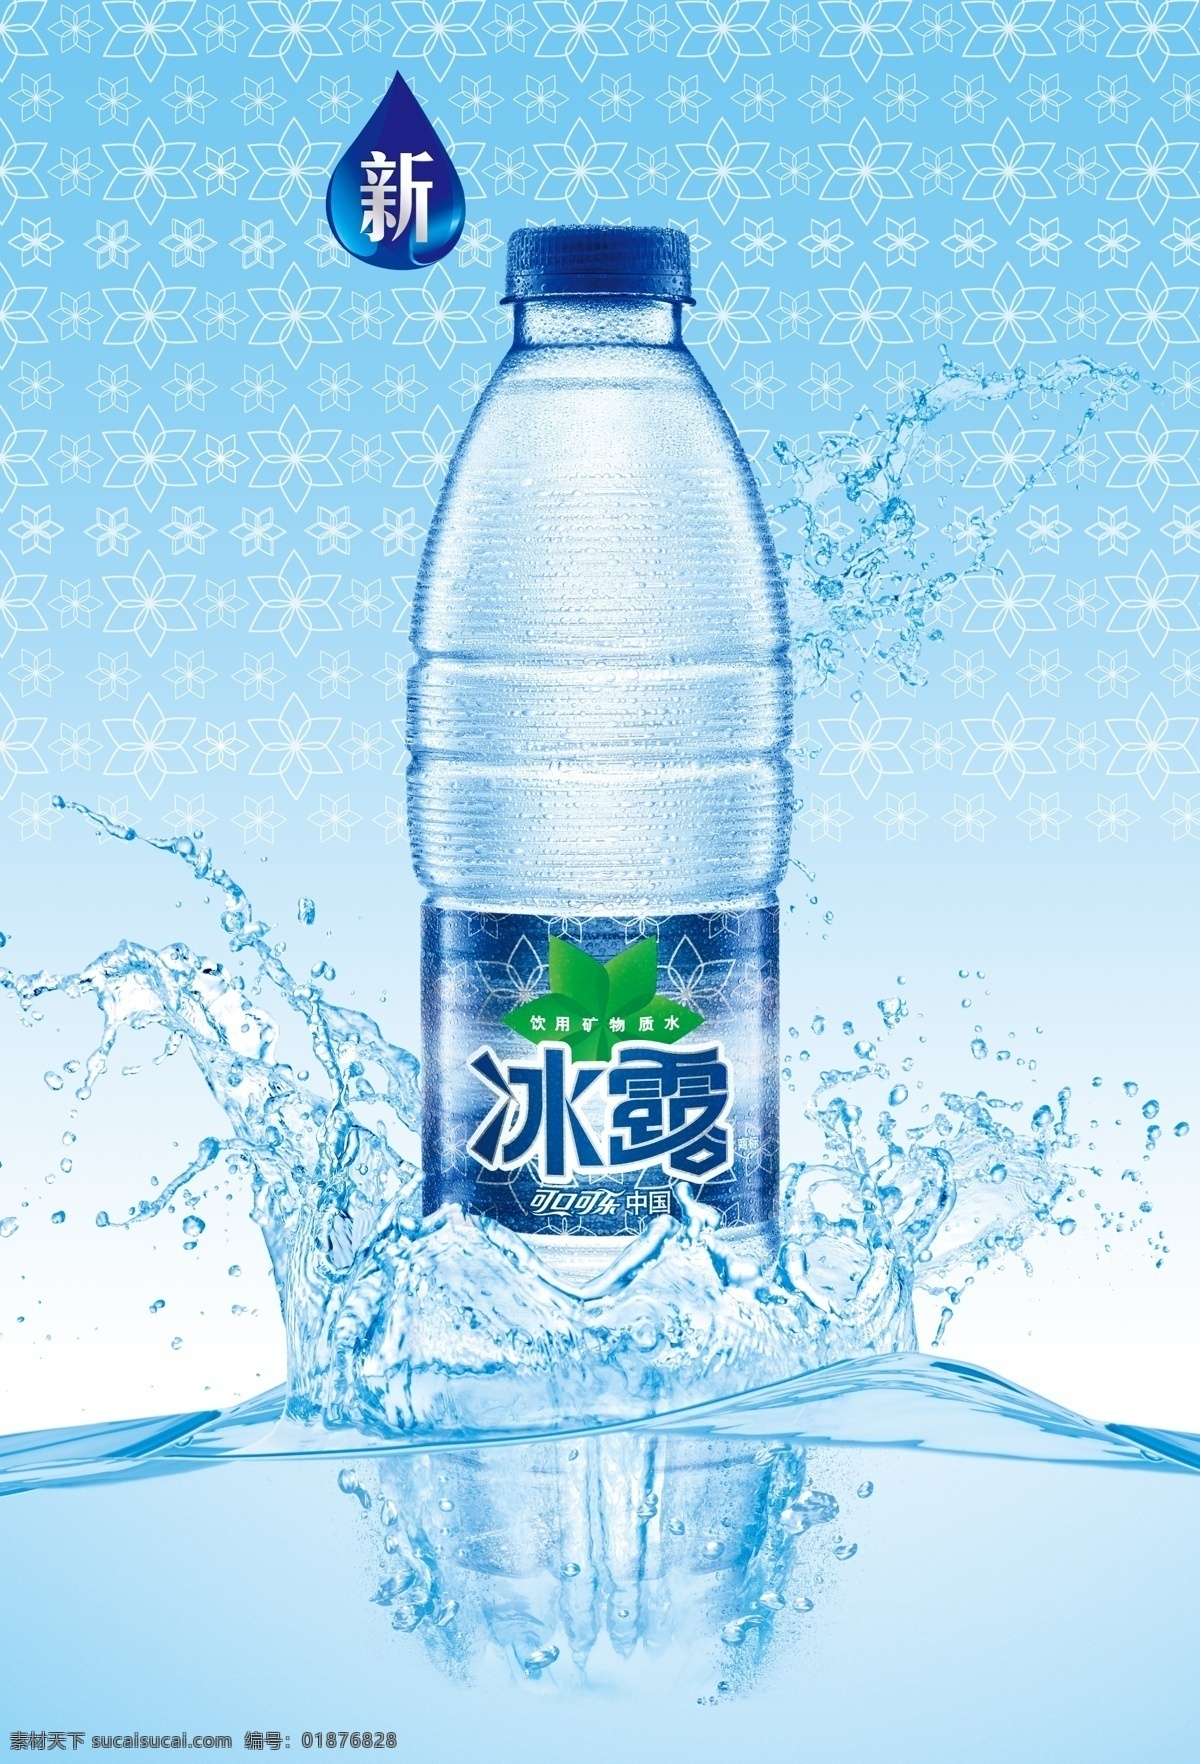 可口可乐 冰露 海报 形象画面 画面 水滴 瓶子 背景底色 矿泉水 水 蓝色 分层 源文件